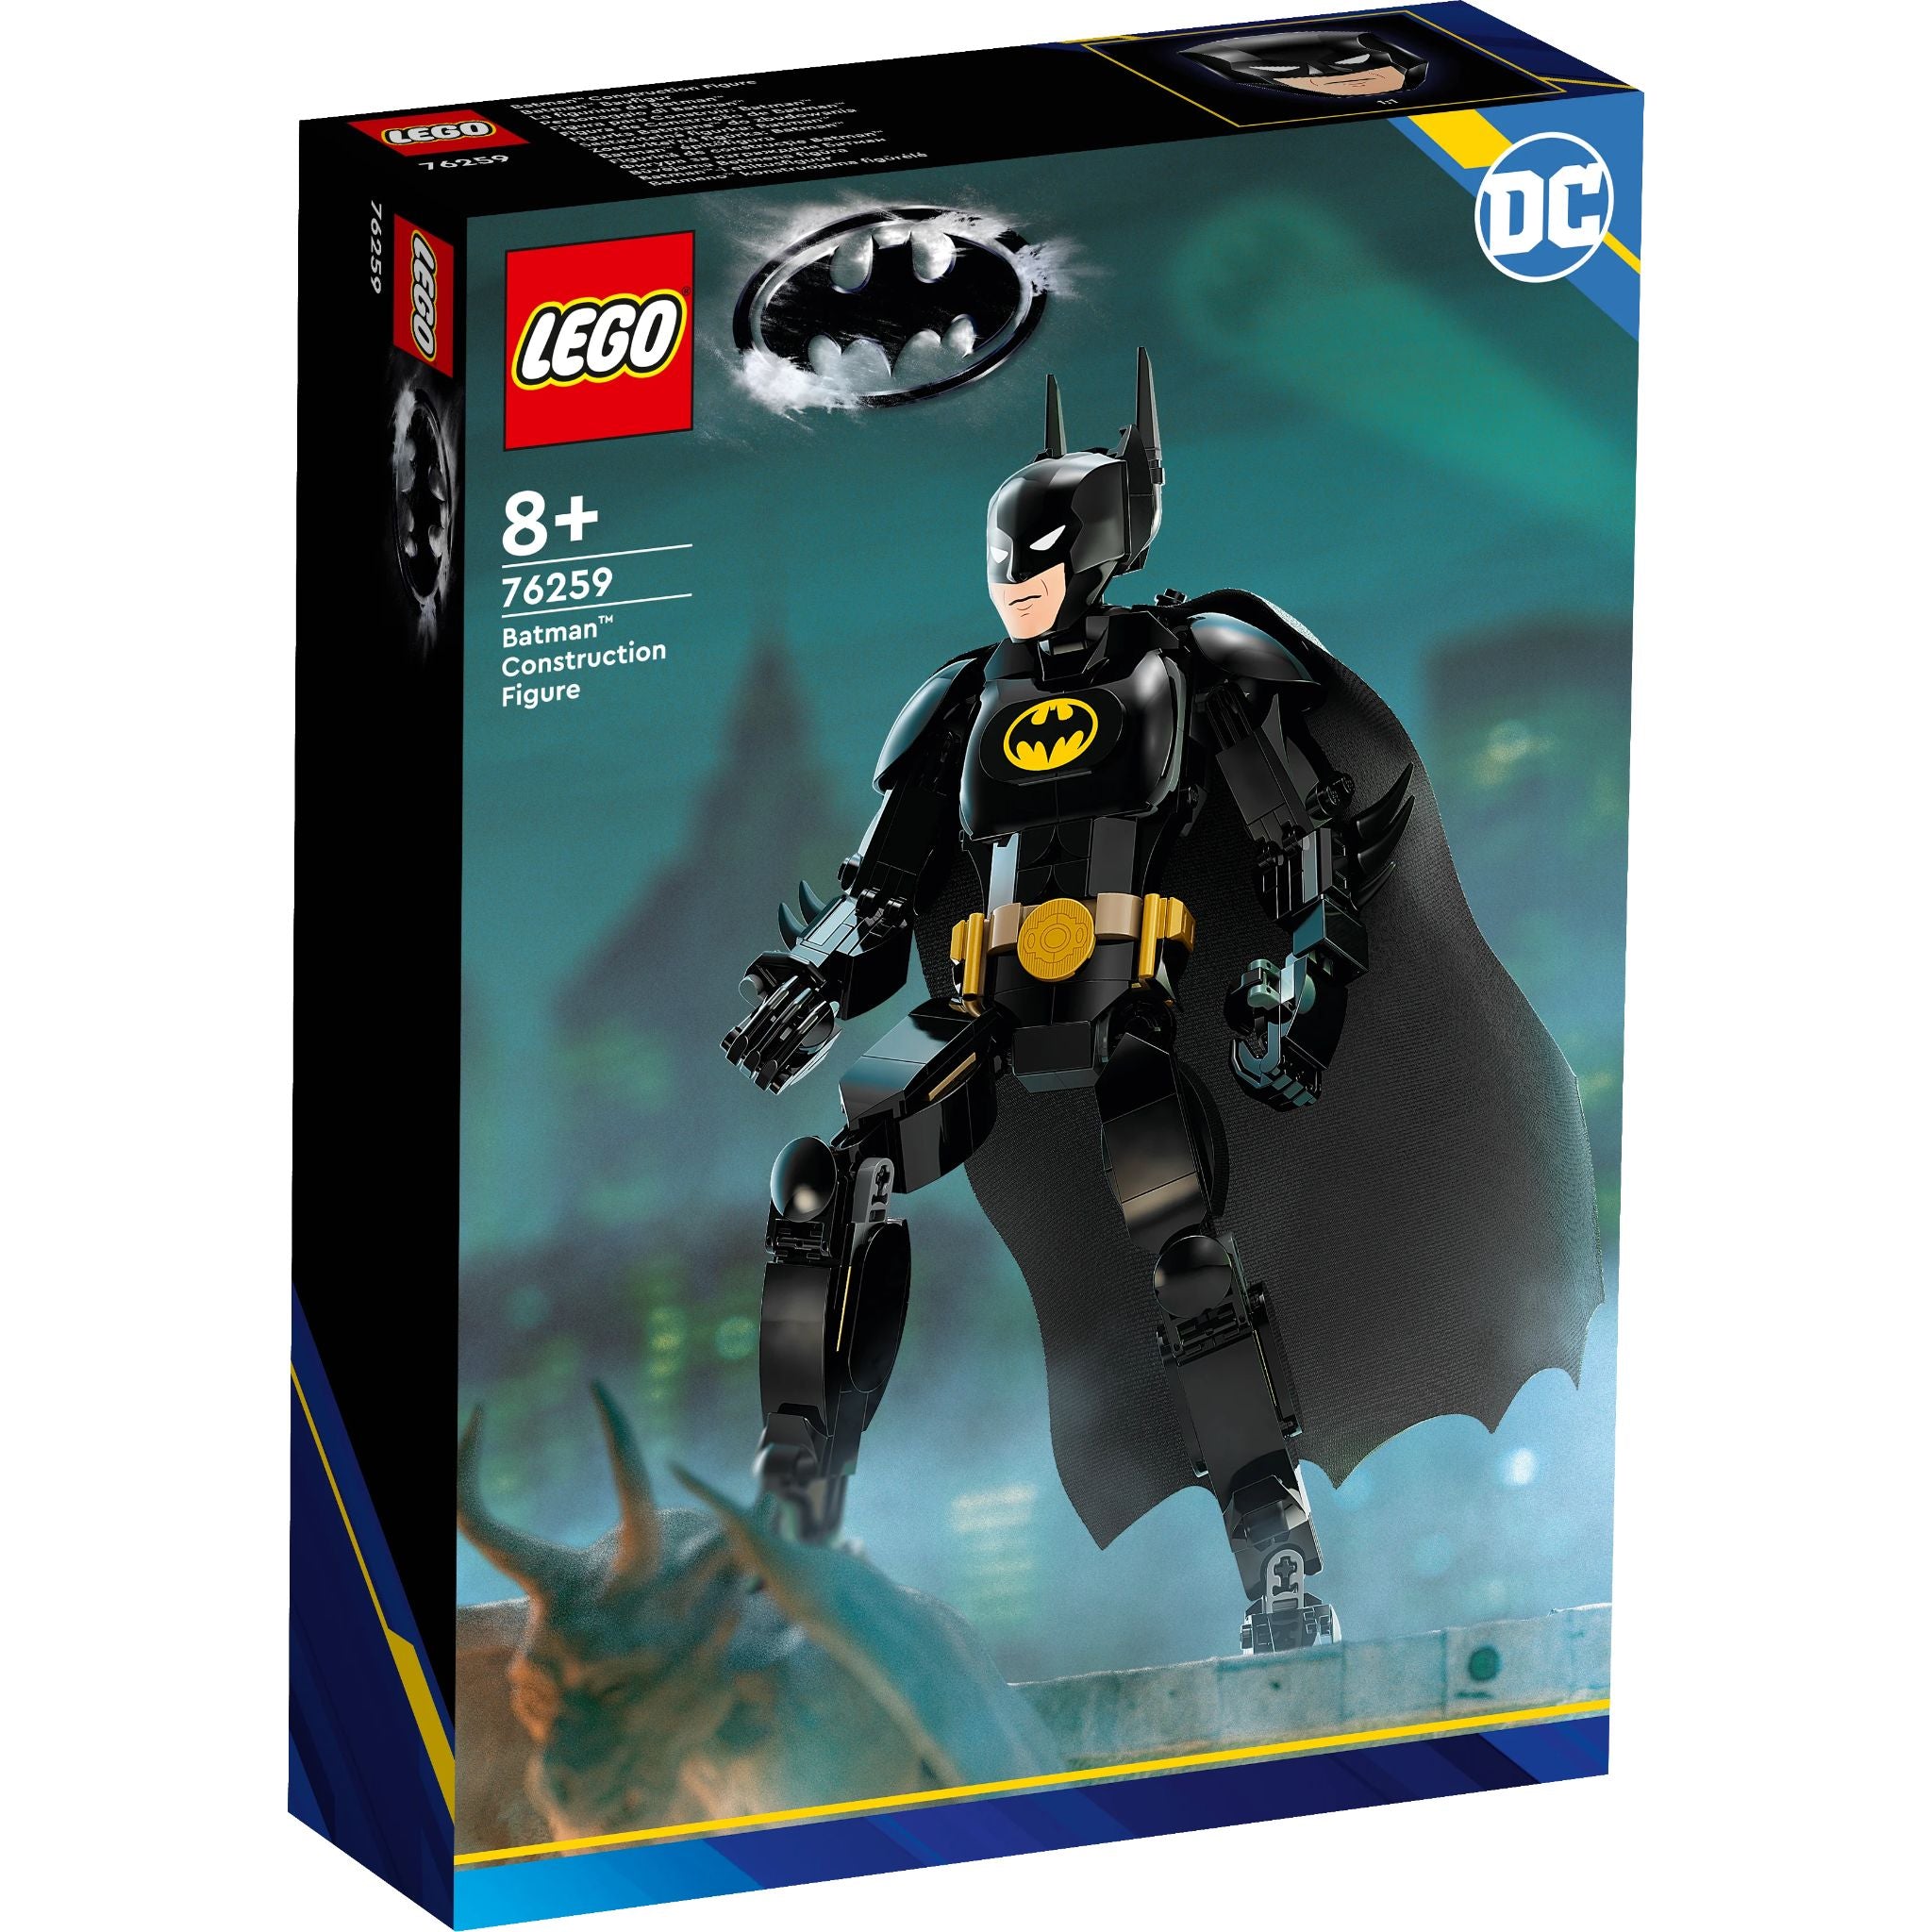 LEGO Super Heroes: Batman™ Construction Figure (76259)